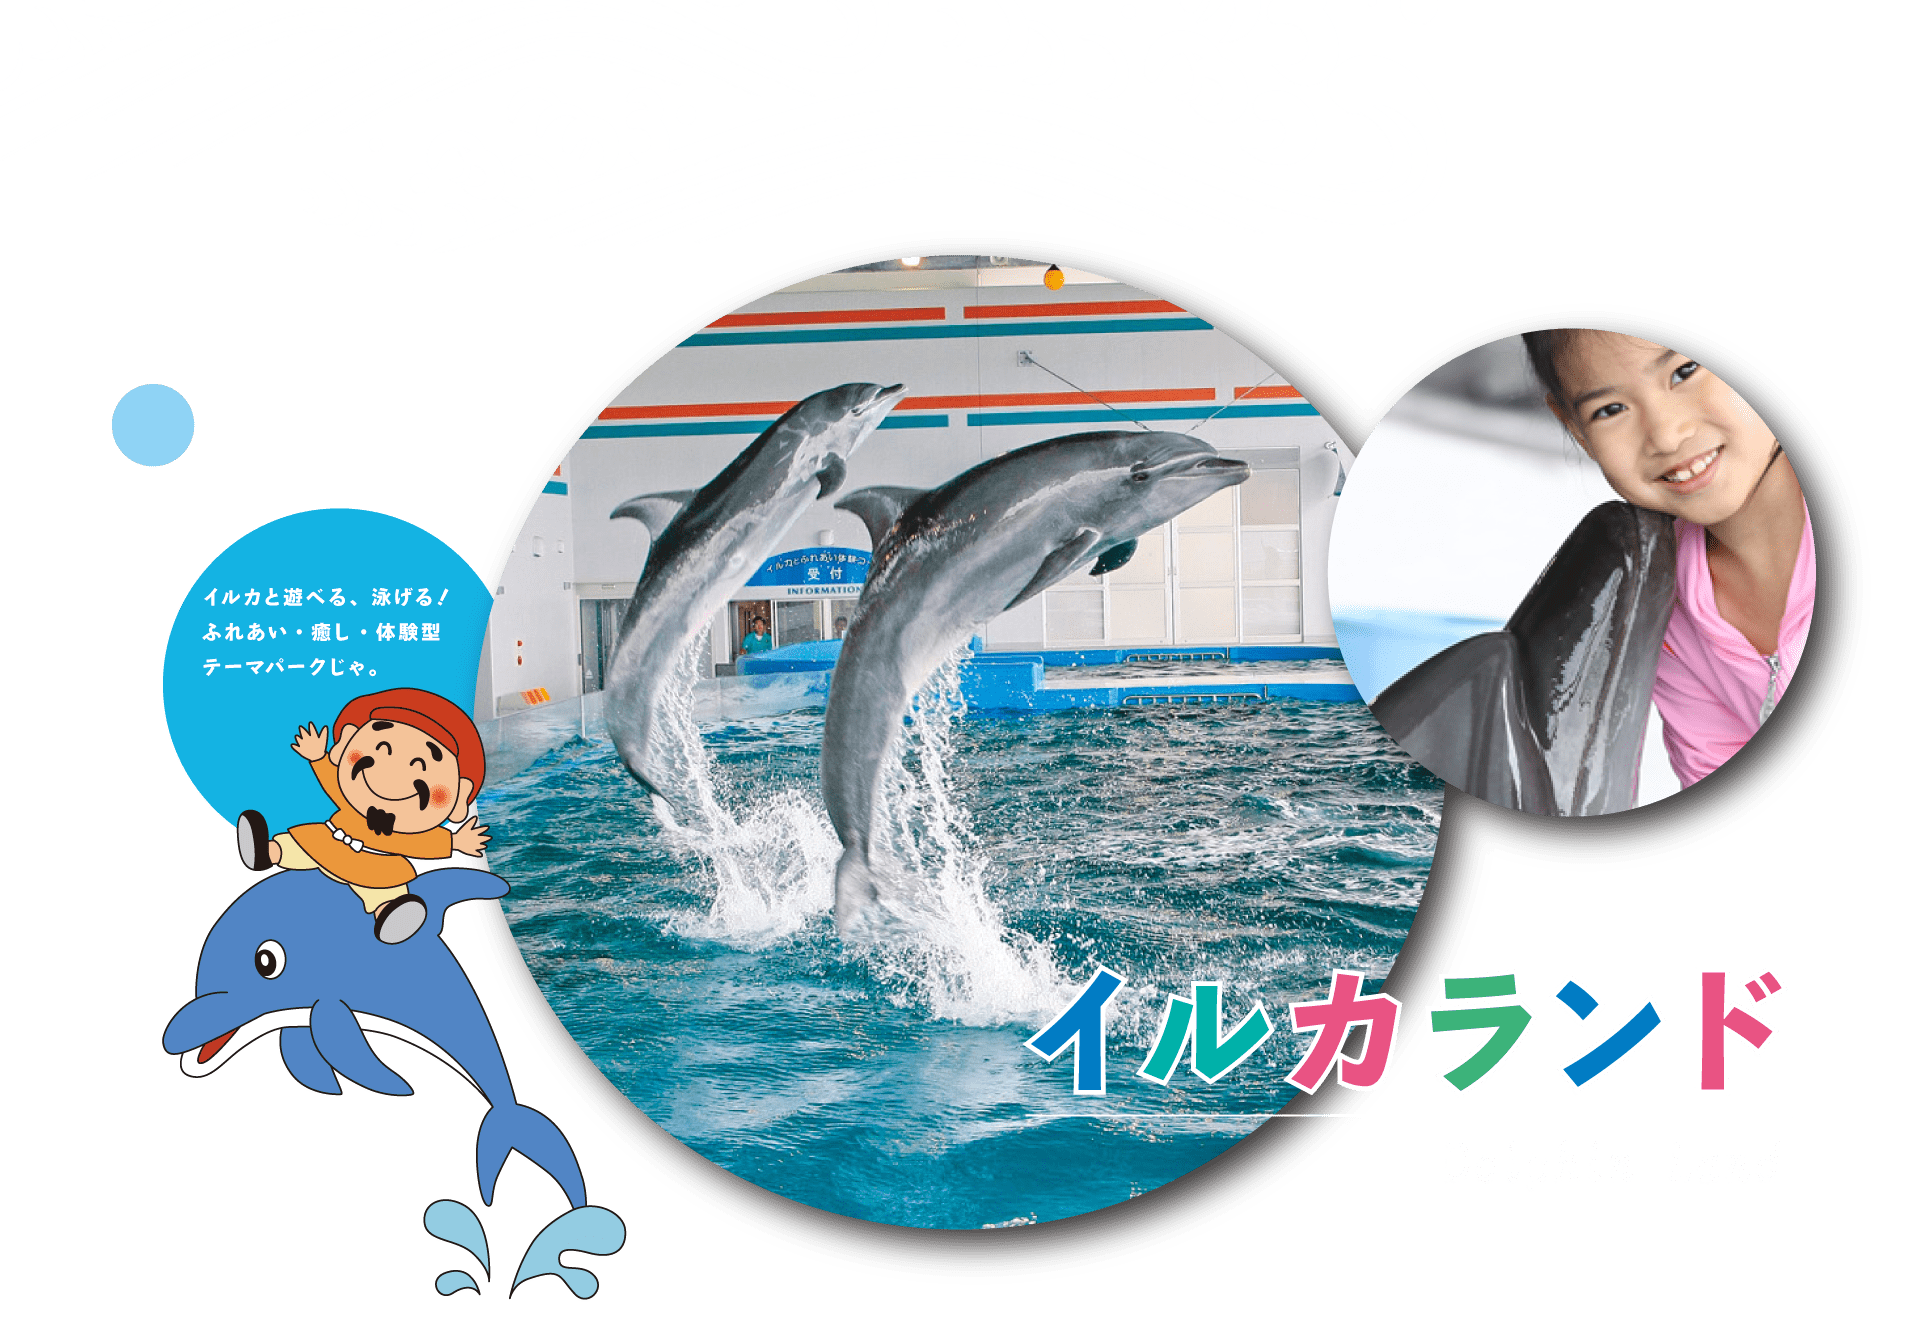 イルカランド Dolphin Land　イルカと遊べる、泳げる！ふれあい・癒し・体験型テーマパークじゃ。